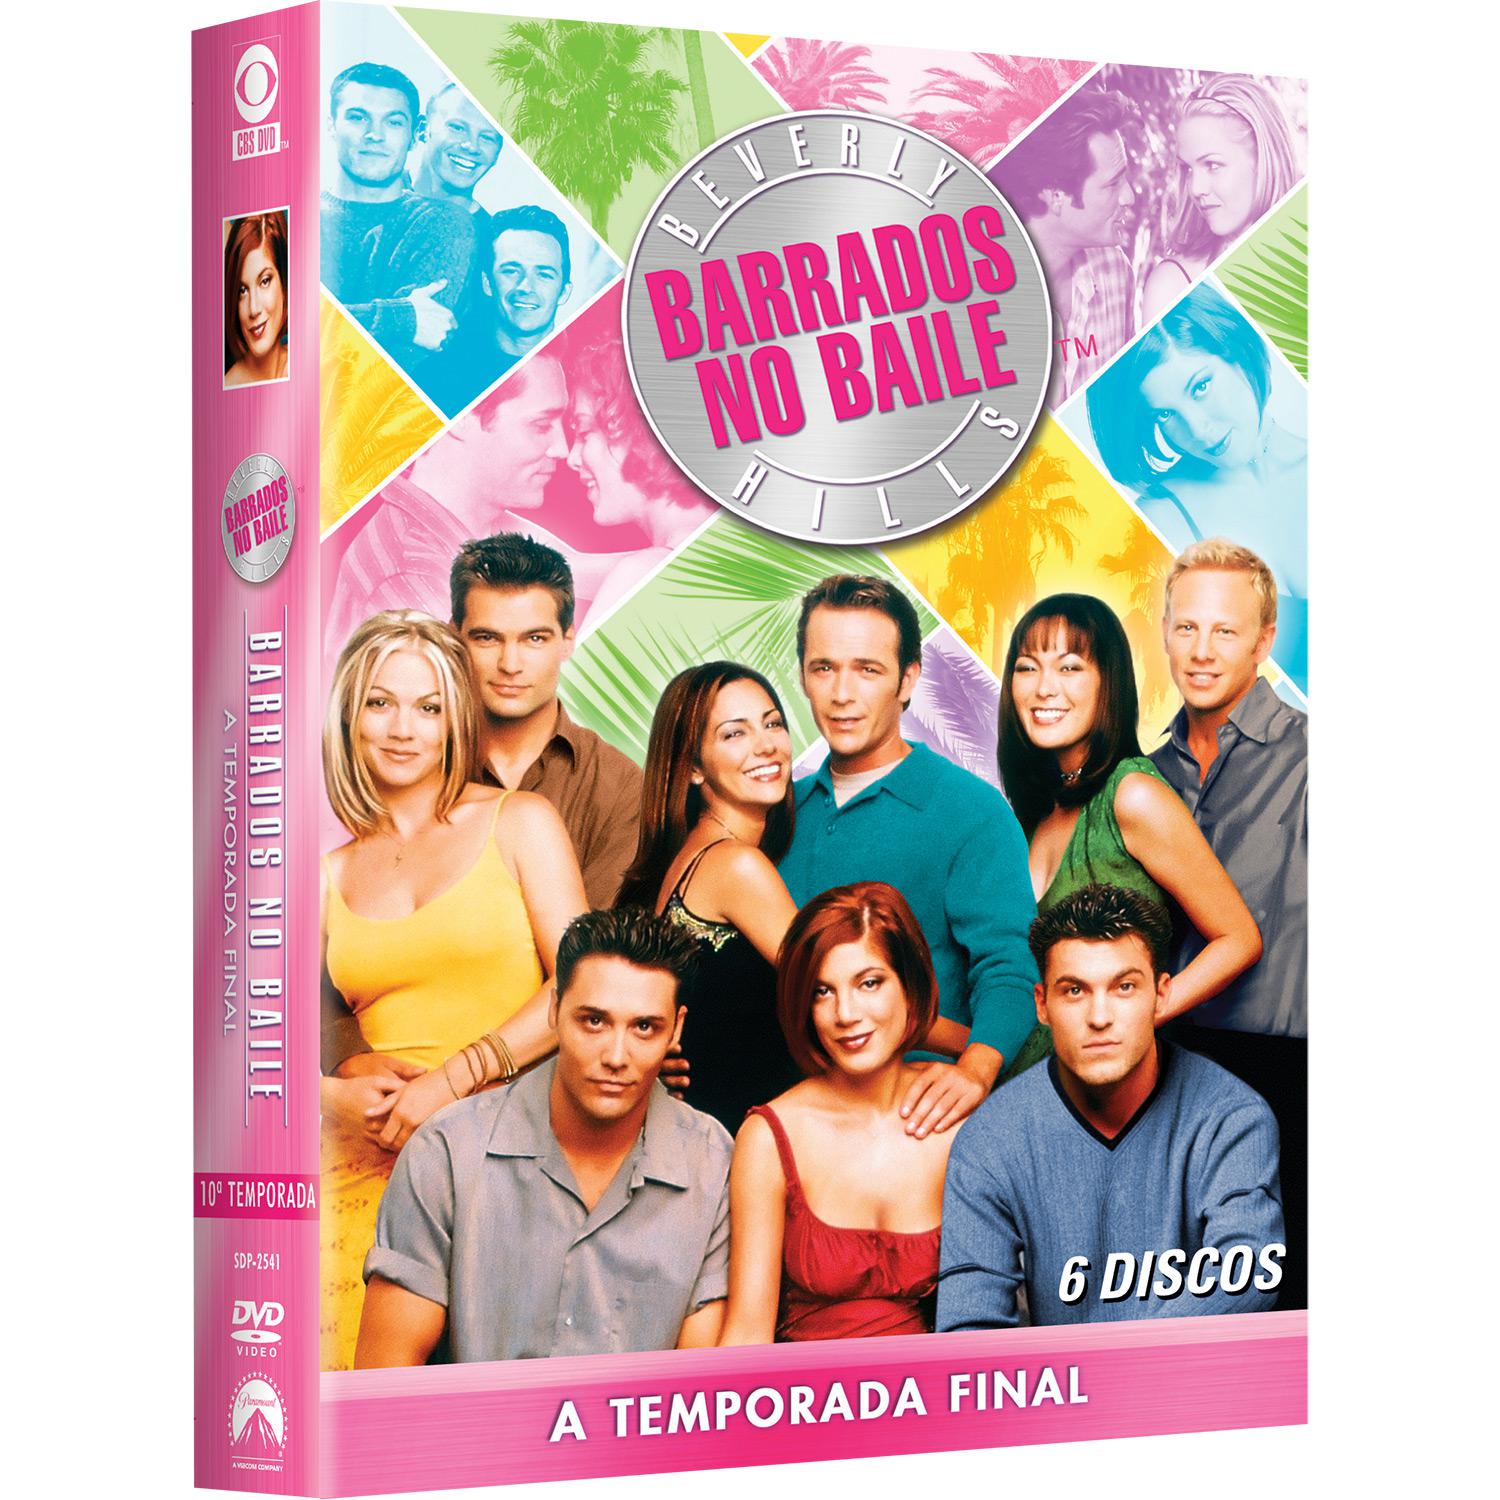 DVD Barrados No Baile - A Temporada Final (10ª Temporada) [6 discos] é bom? Vale a pena?